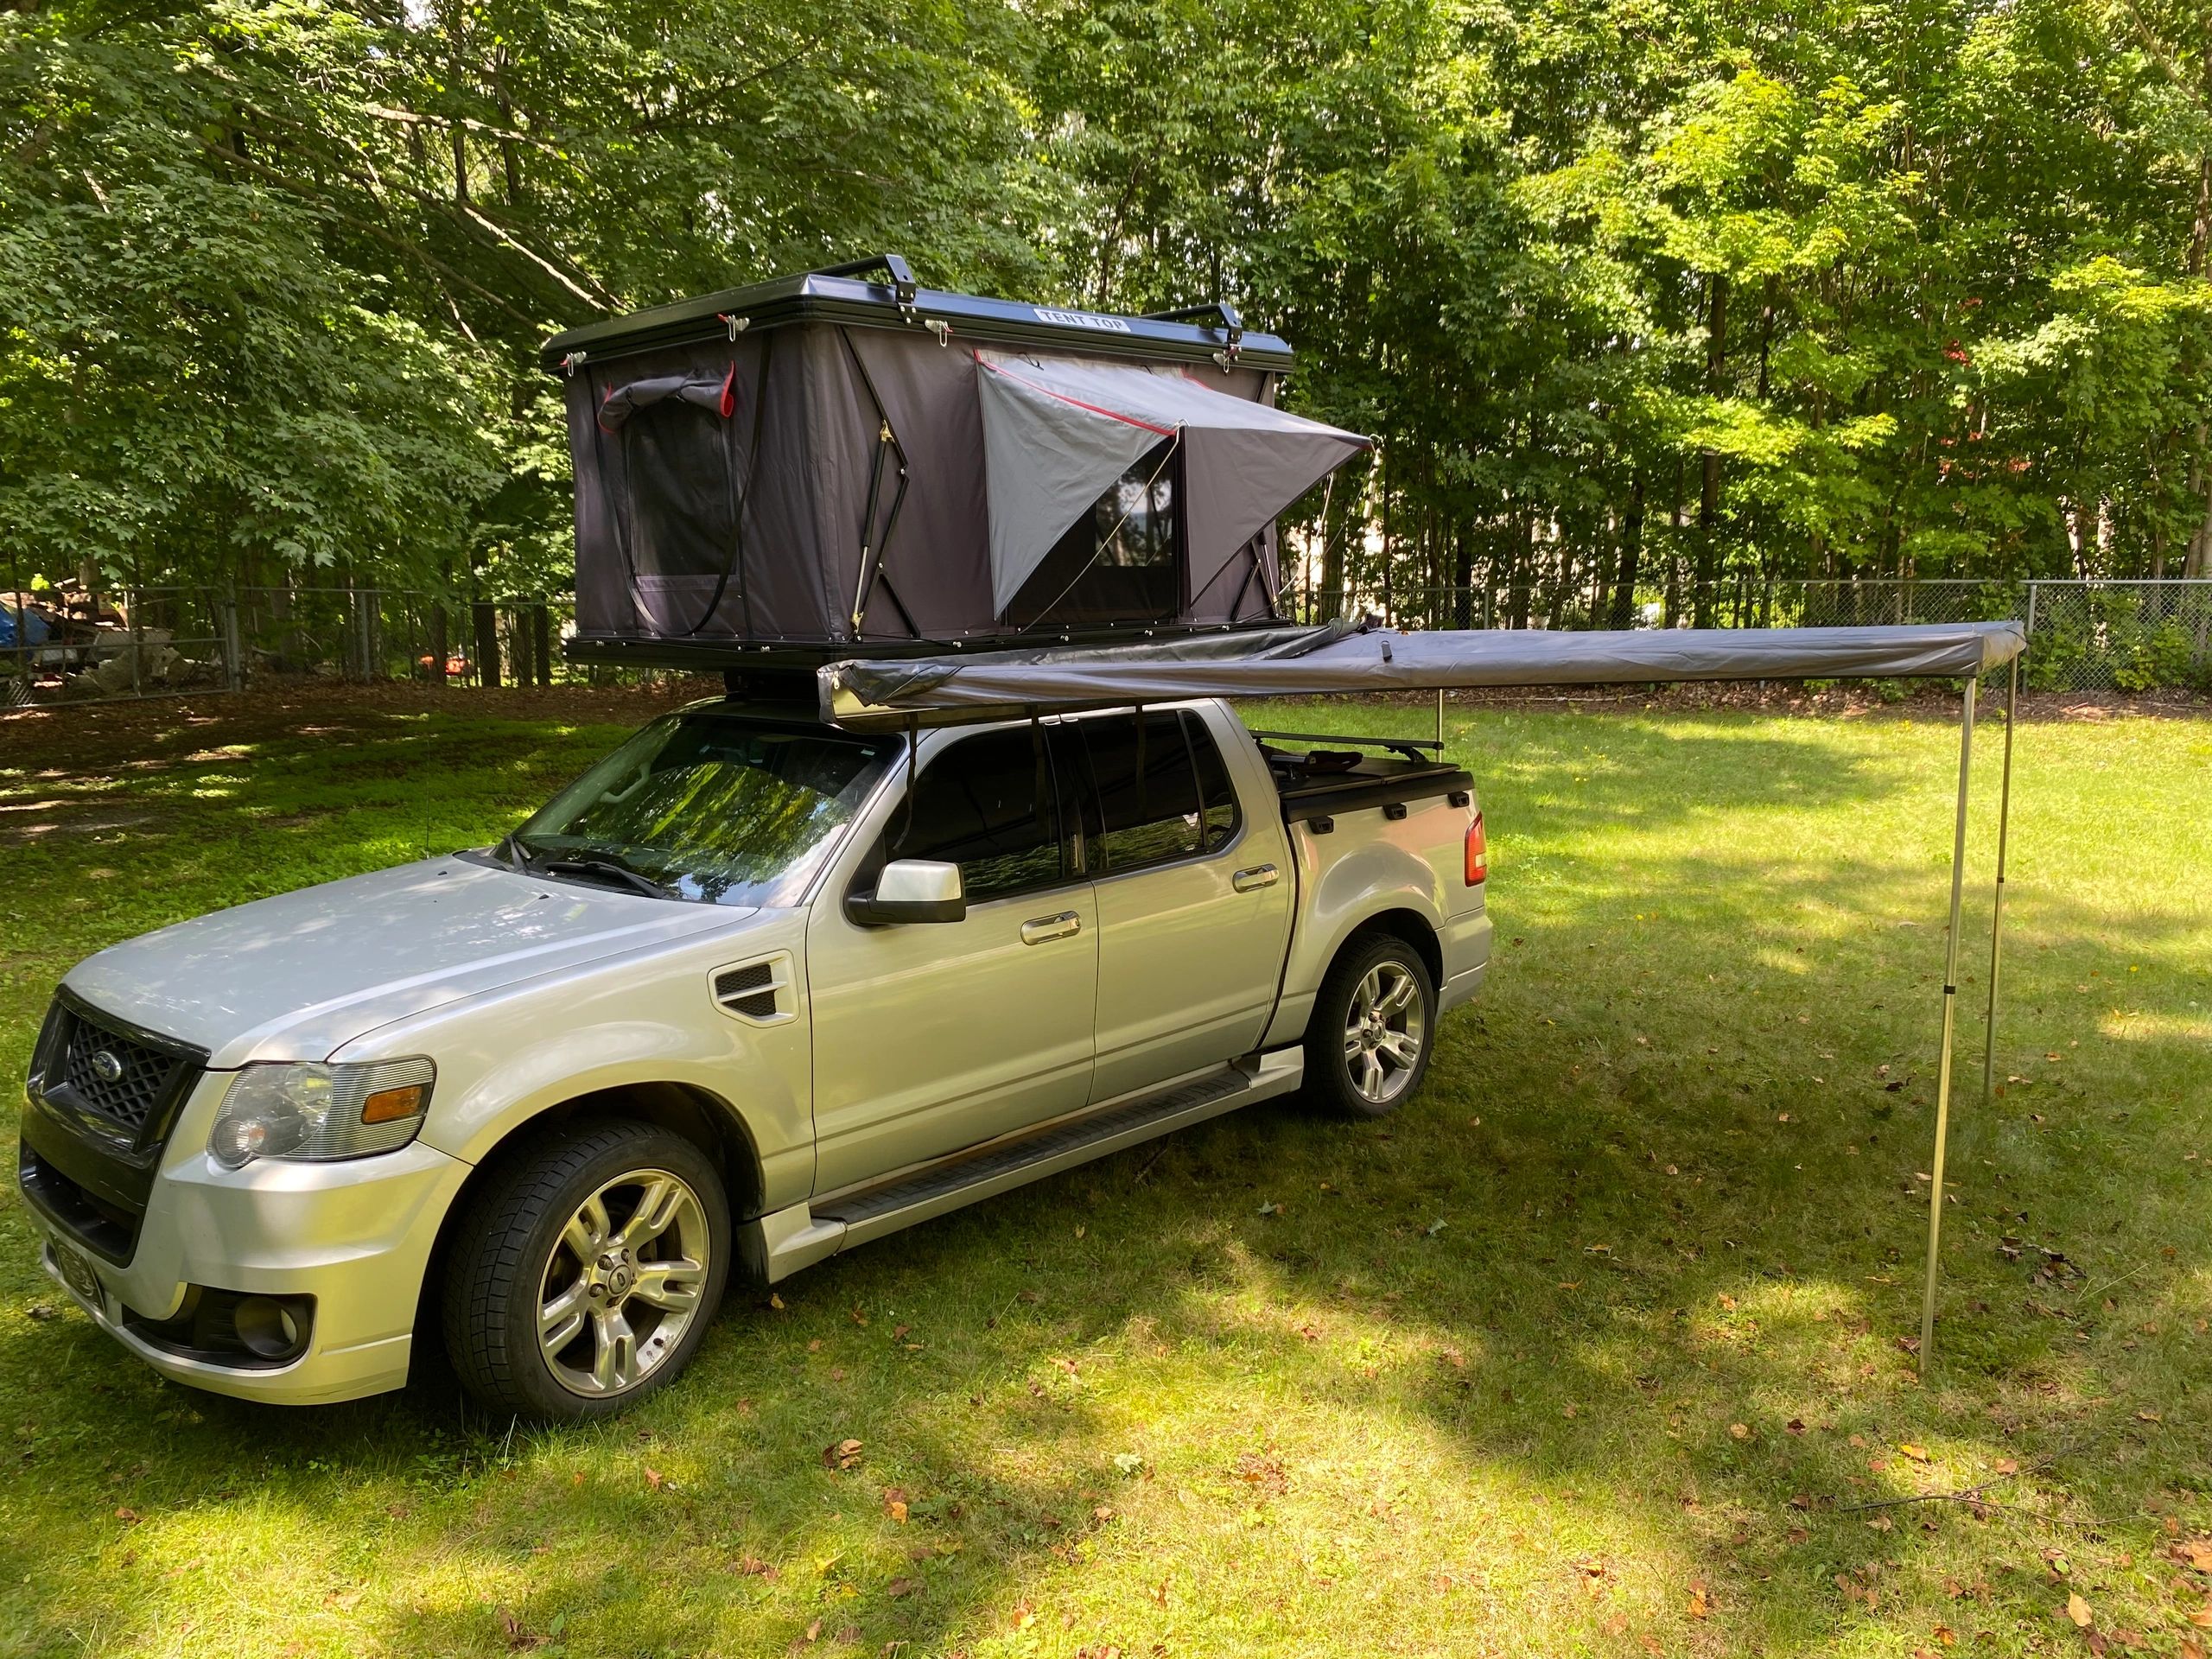 Wholesale Camping pique-nique auvent côté voiture toproof tente